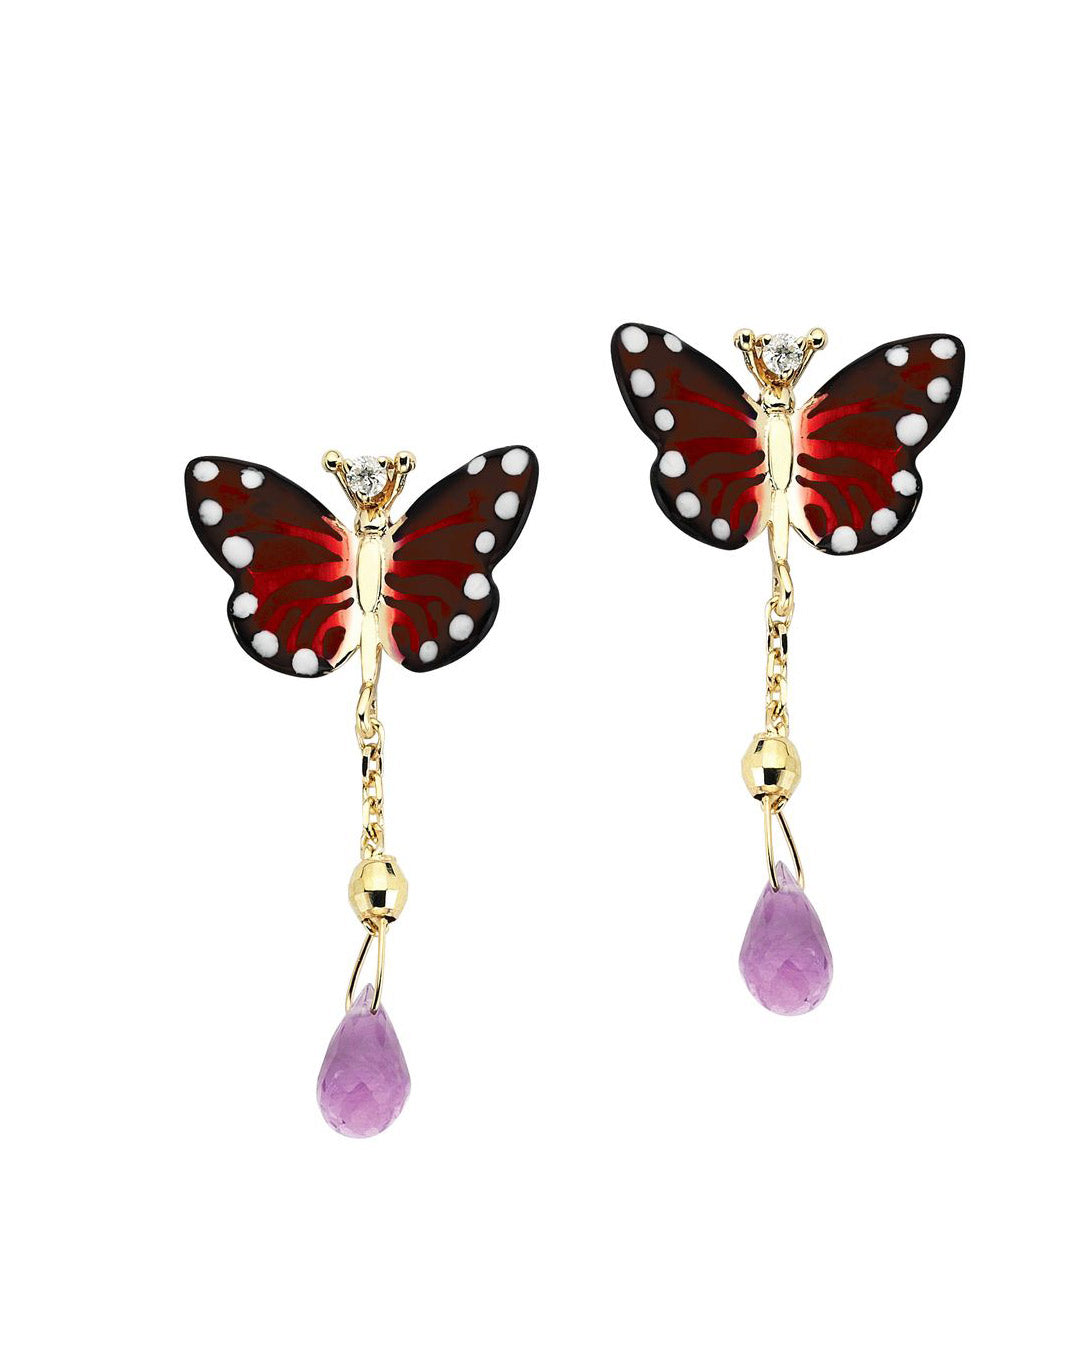 Special Design King Butterfly Earrings